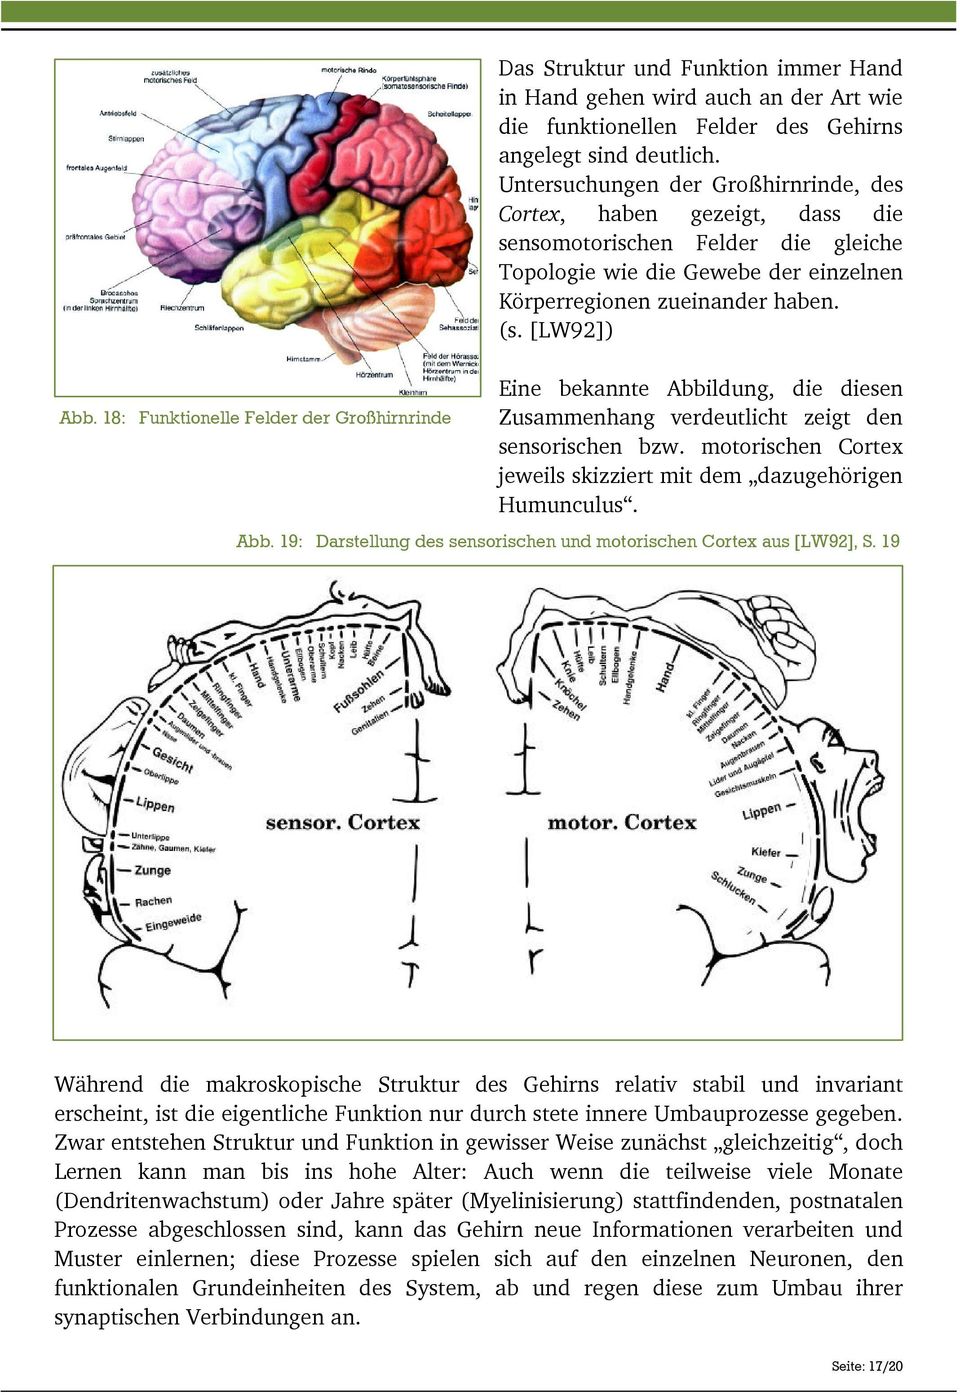 [LW92]) Eine bekannte Abbildung, die diesen Zusammenhang verdeutlicht zeigt den sensorischen bzw. motorischen Cortex jeweils skizziert mit dem dazugehörigen Humunculus. Abb. 19: Darstellung des sensorischen und motorischen Cortex aus [LW92], S.